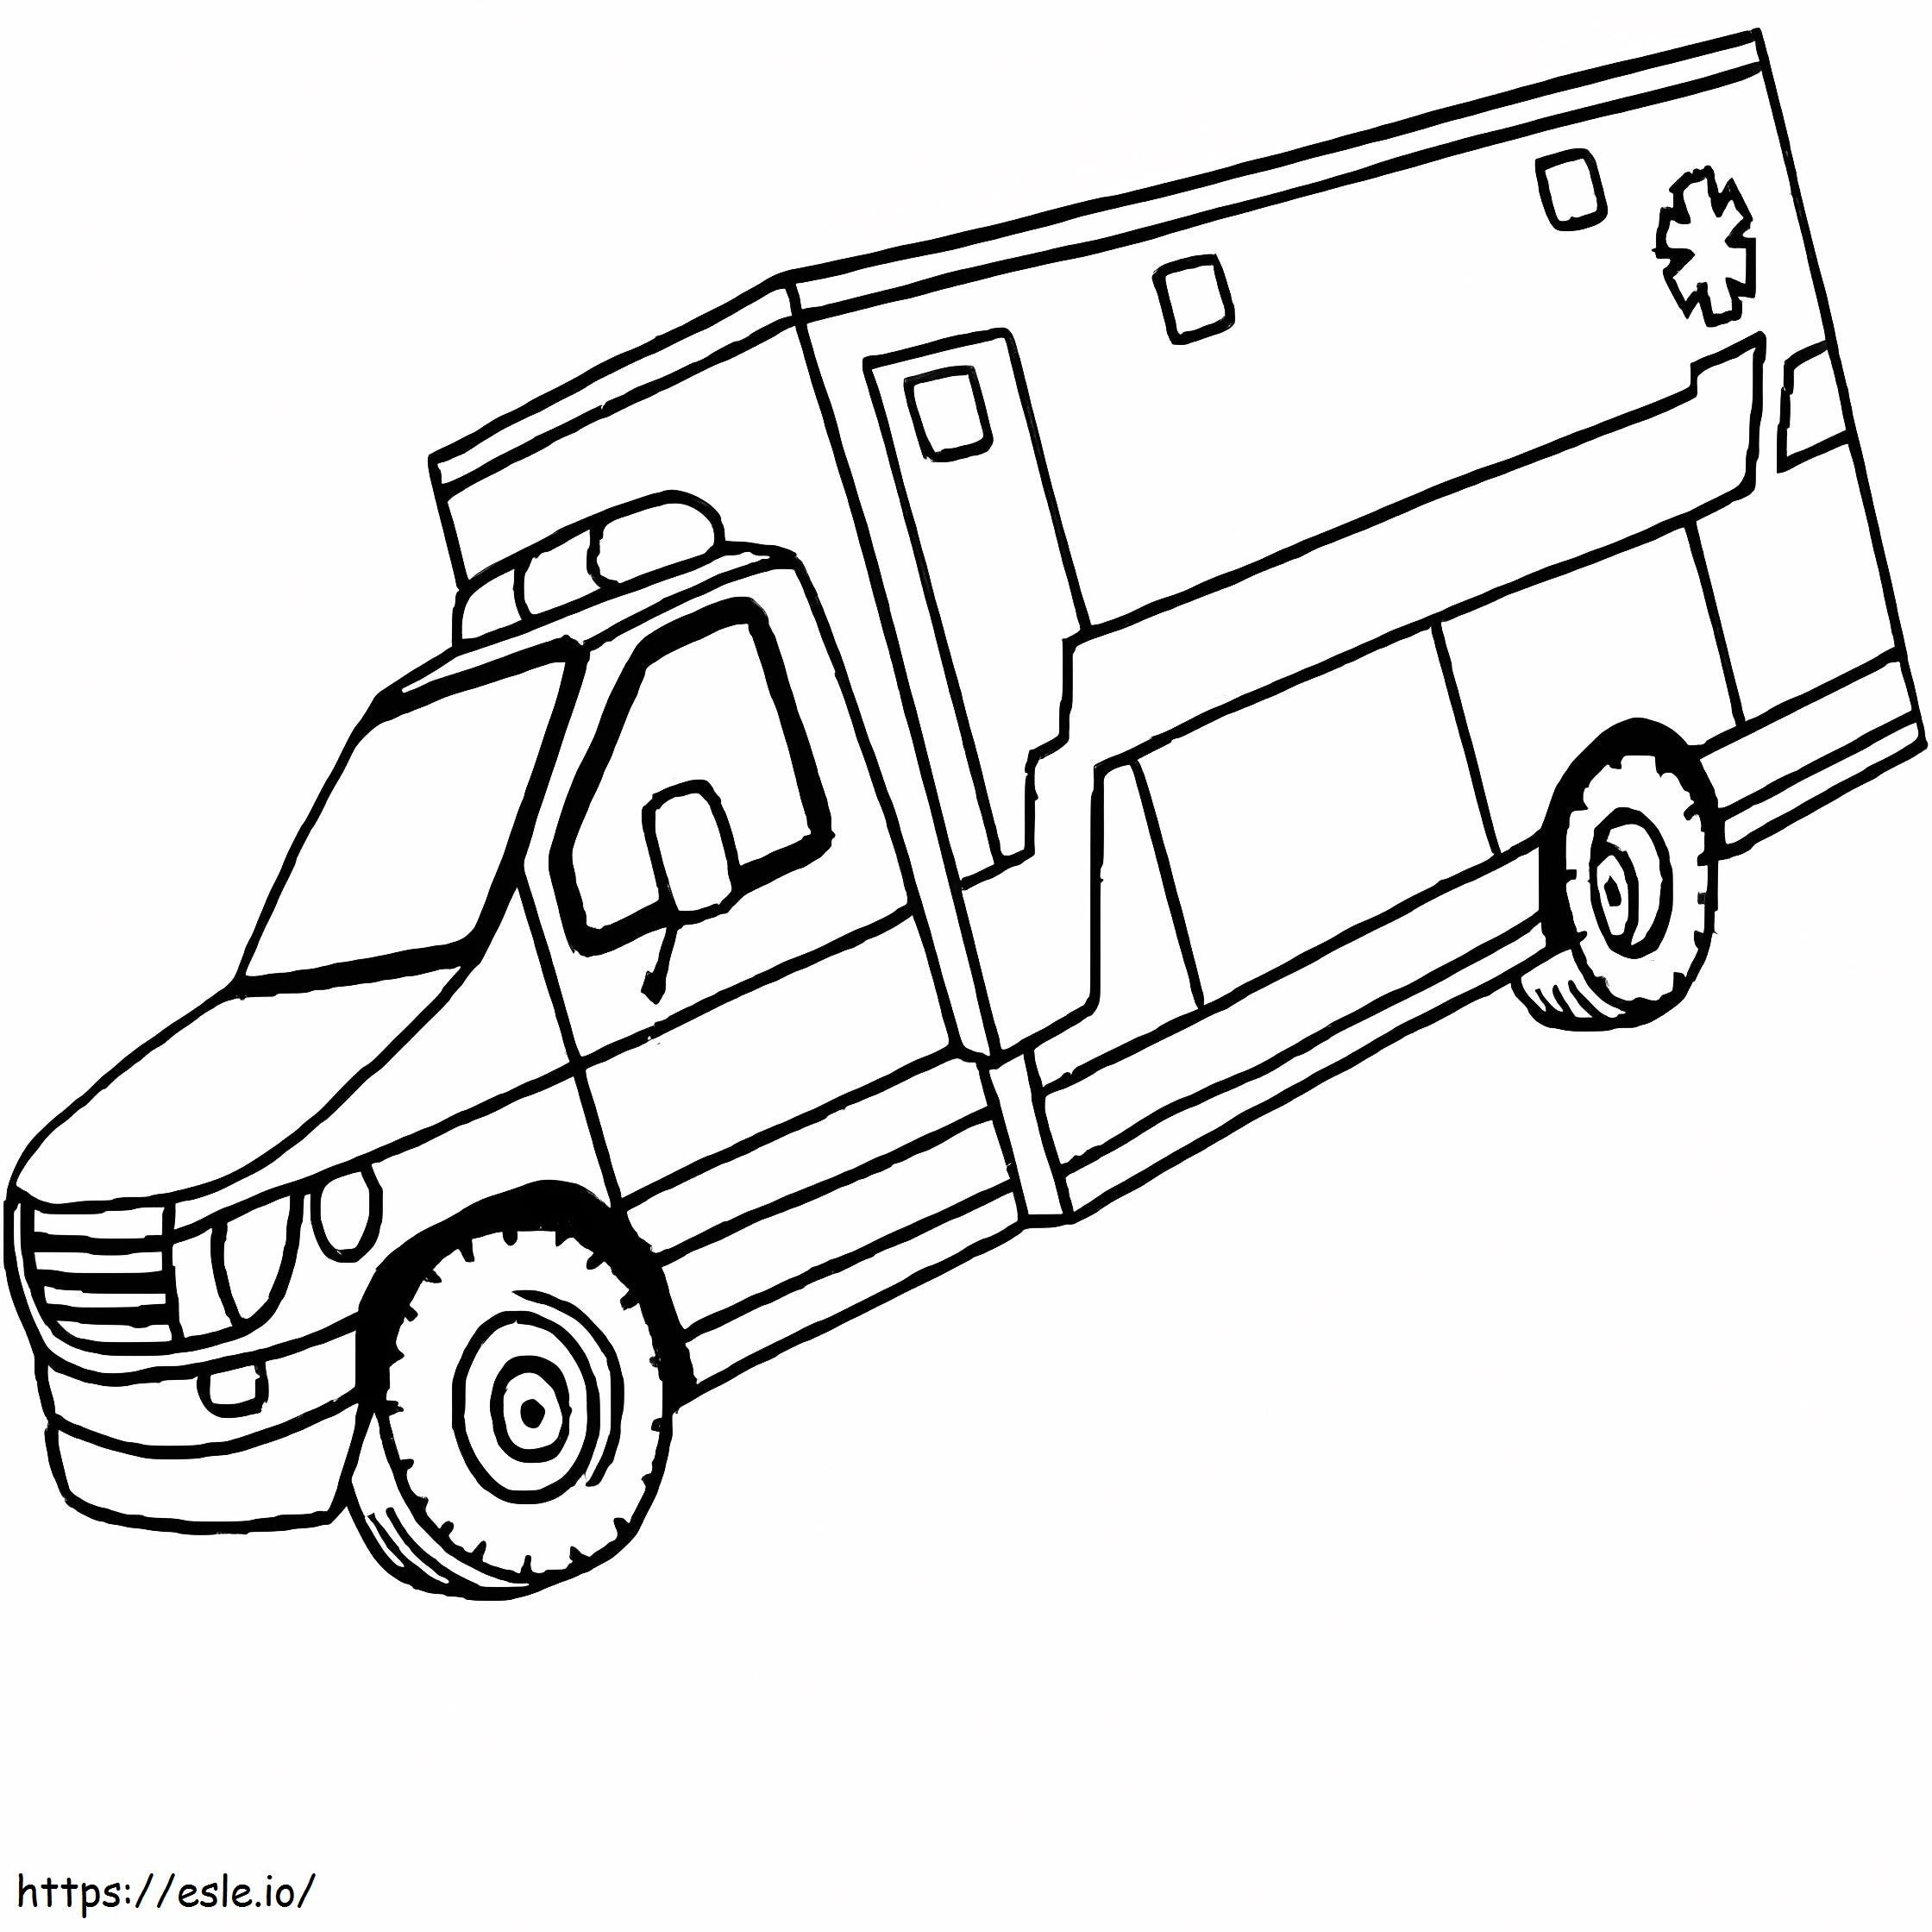 Ambulance 17 coloring page